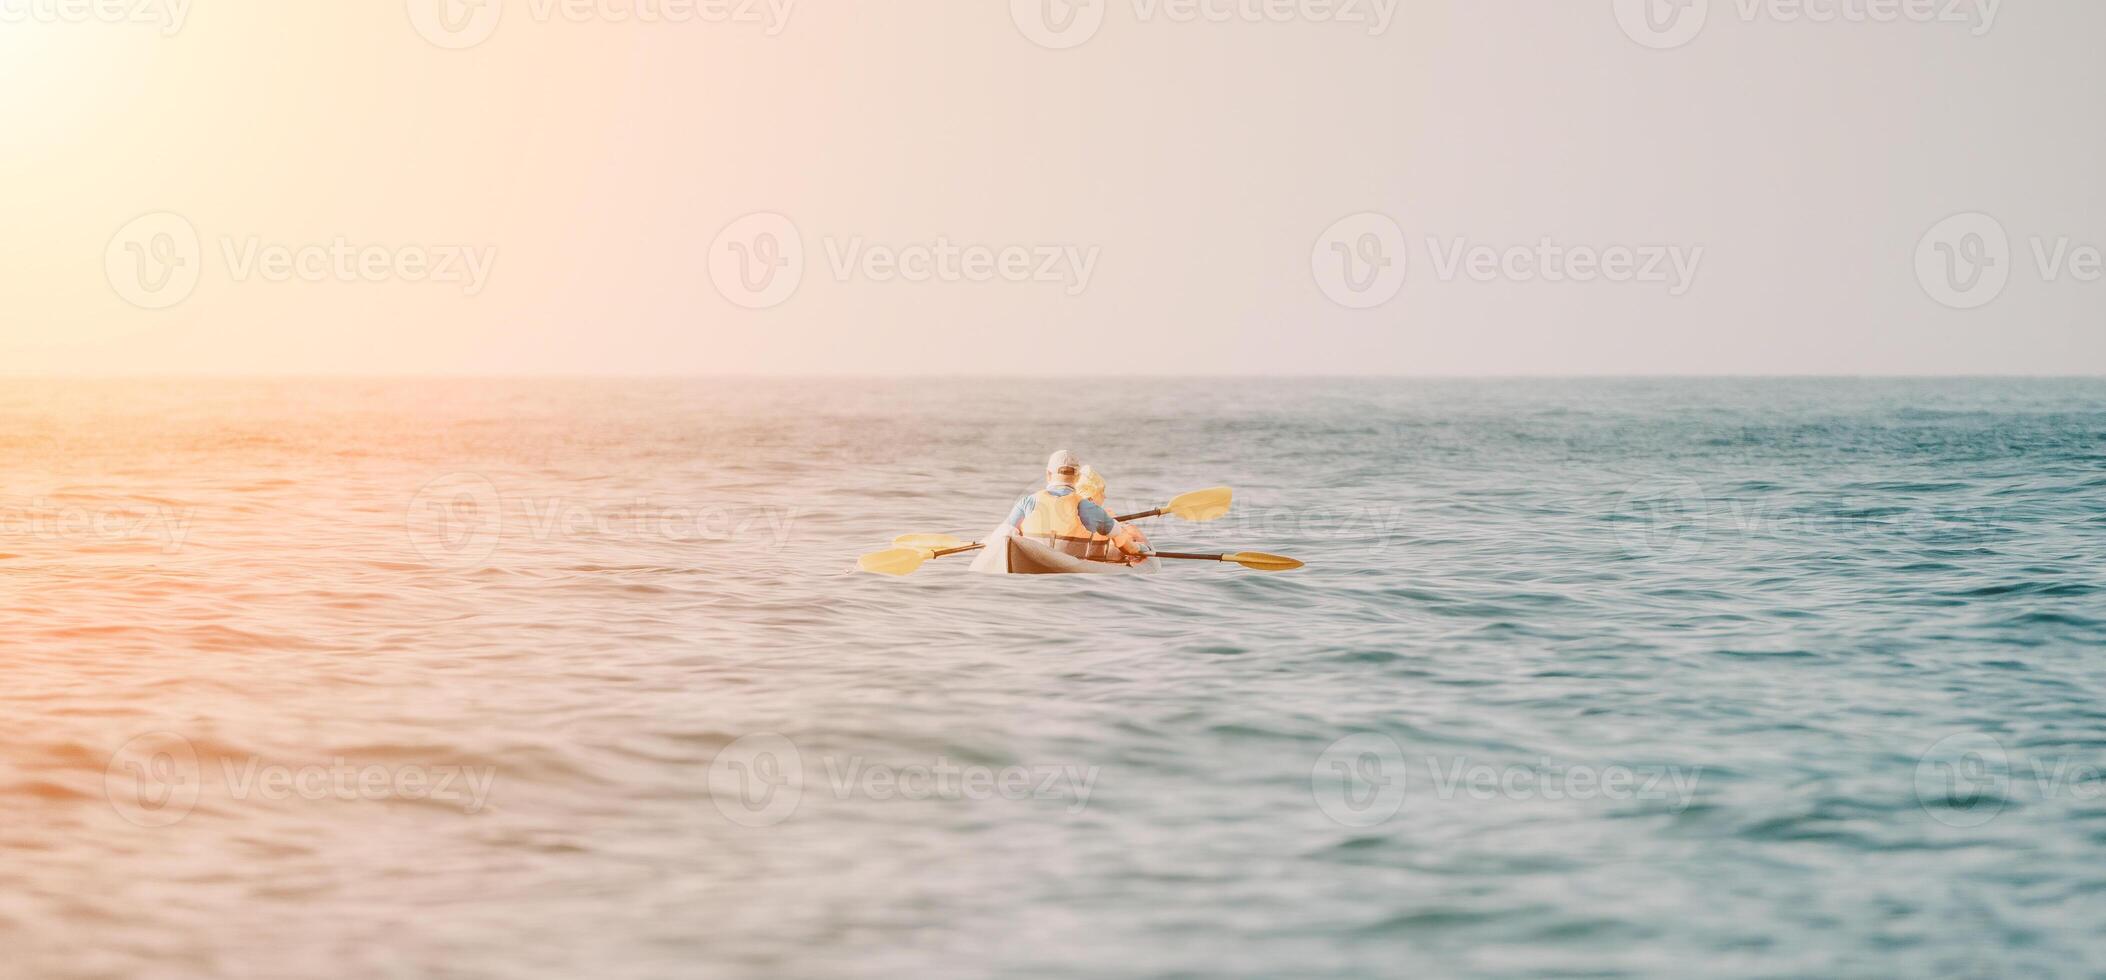 gelukkig paar kajaks in een opblaasbaar kajak Aan de zee Bij zonsondergang. paar kanoën in de zee in de buurt de eiland met bergen. mensen kajakken in leven jassen zeil. terug visie foto